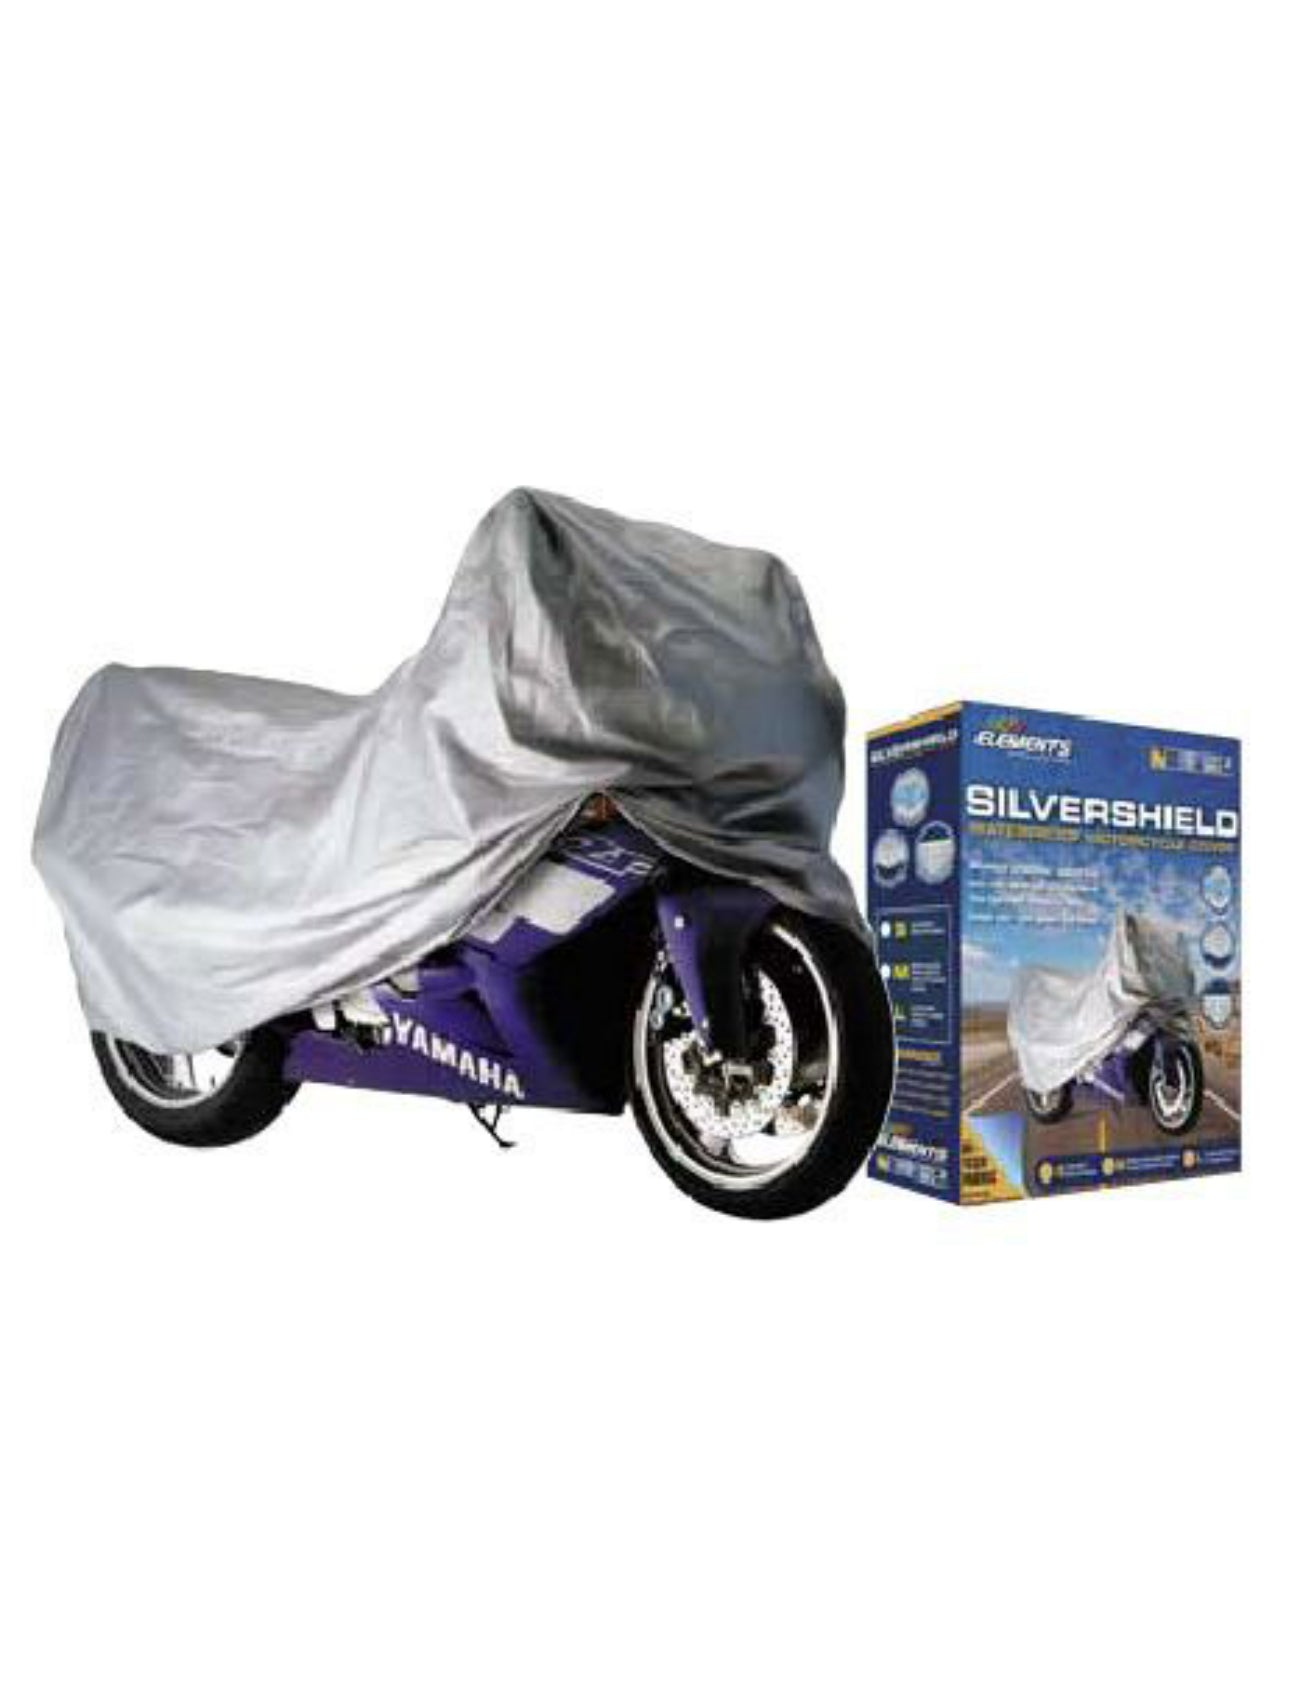 MOTORCYCLE COVER WATERPROOF 1000-1500CC